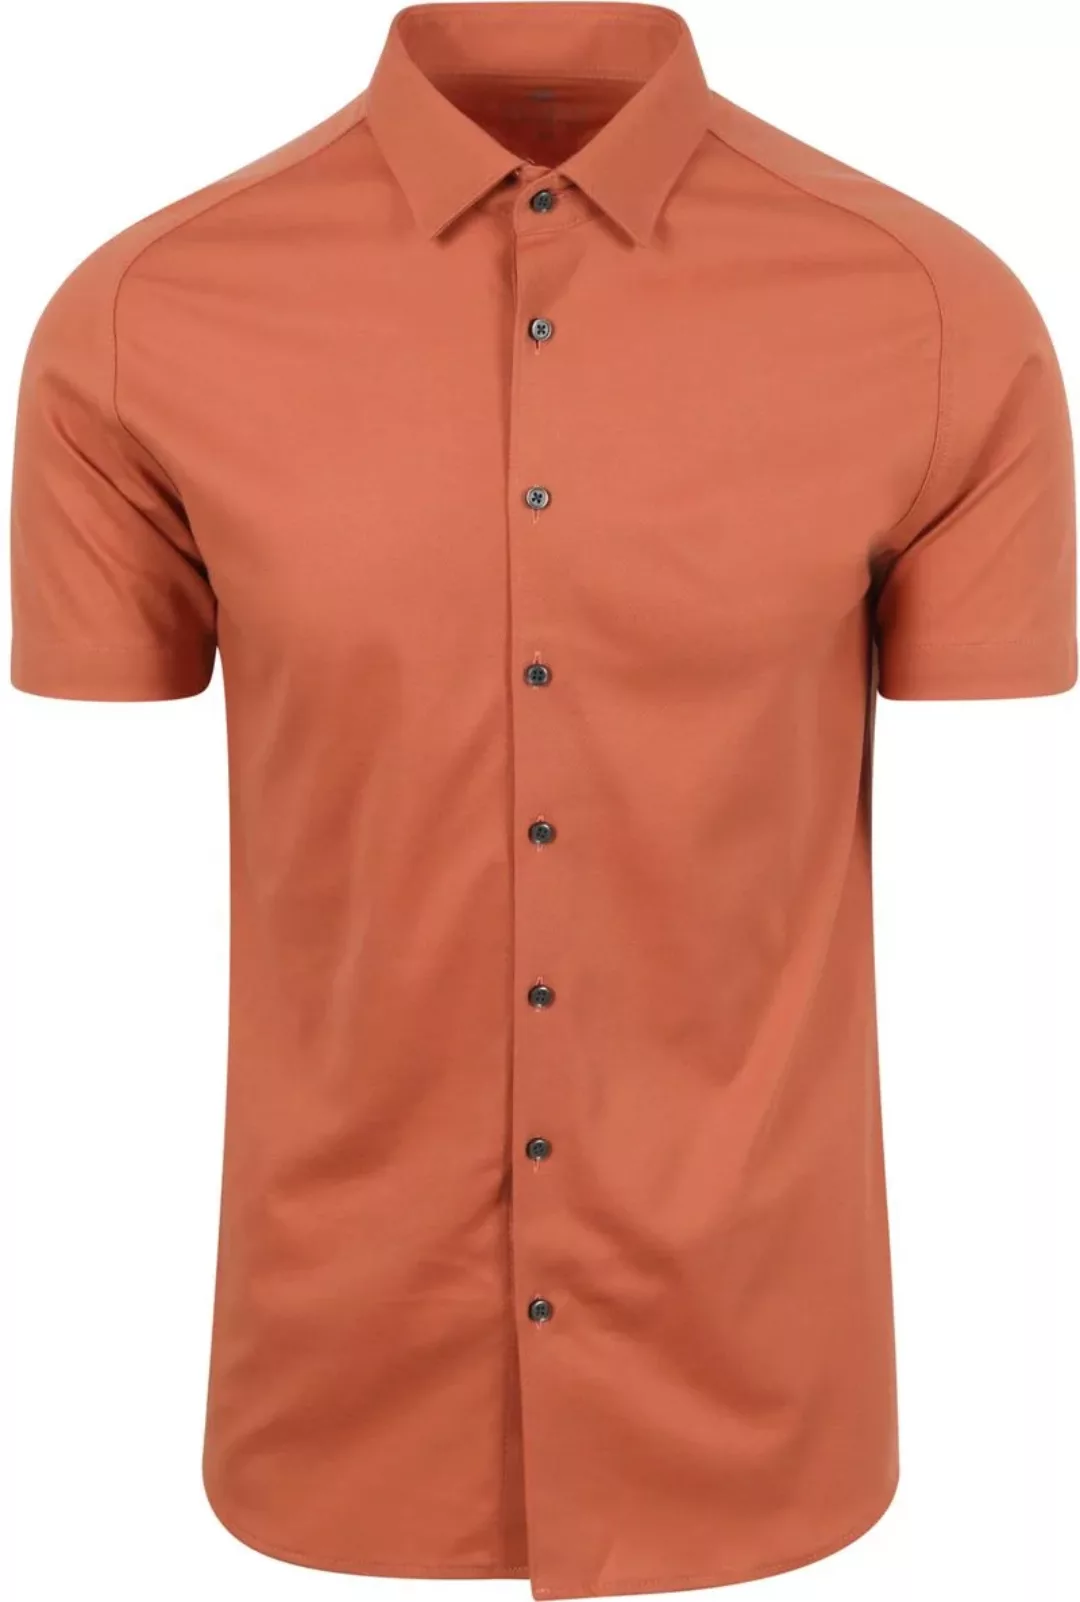 Desoto Short Sleeve Jersey Hemd Peach Orange - Größe 3XL günstig online kaufen